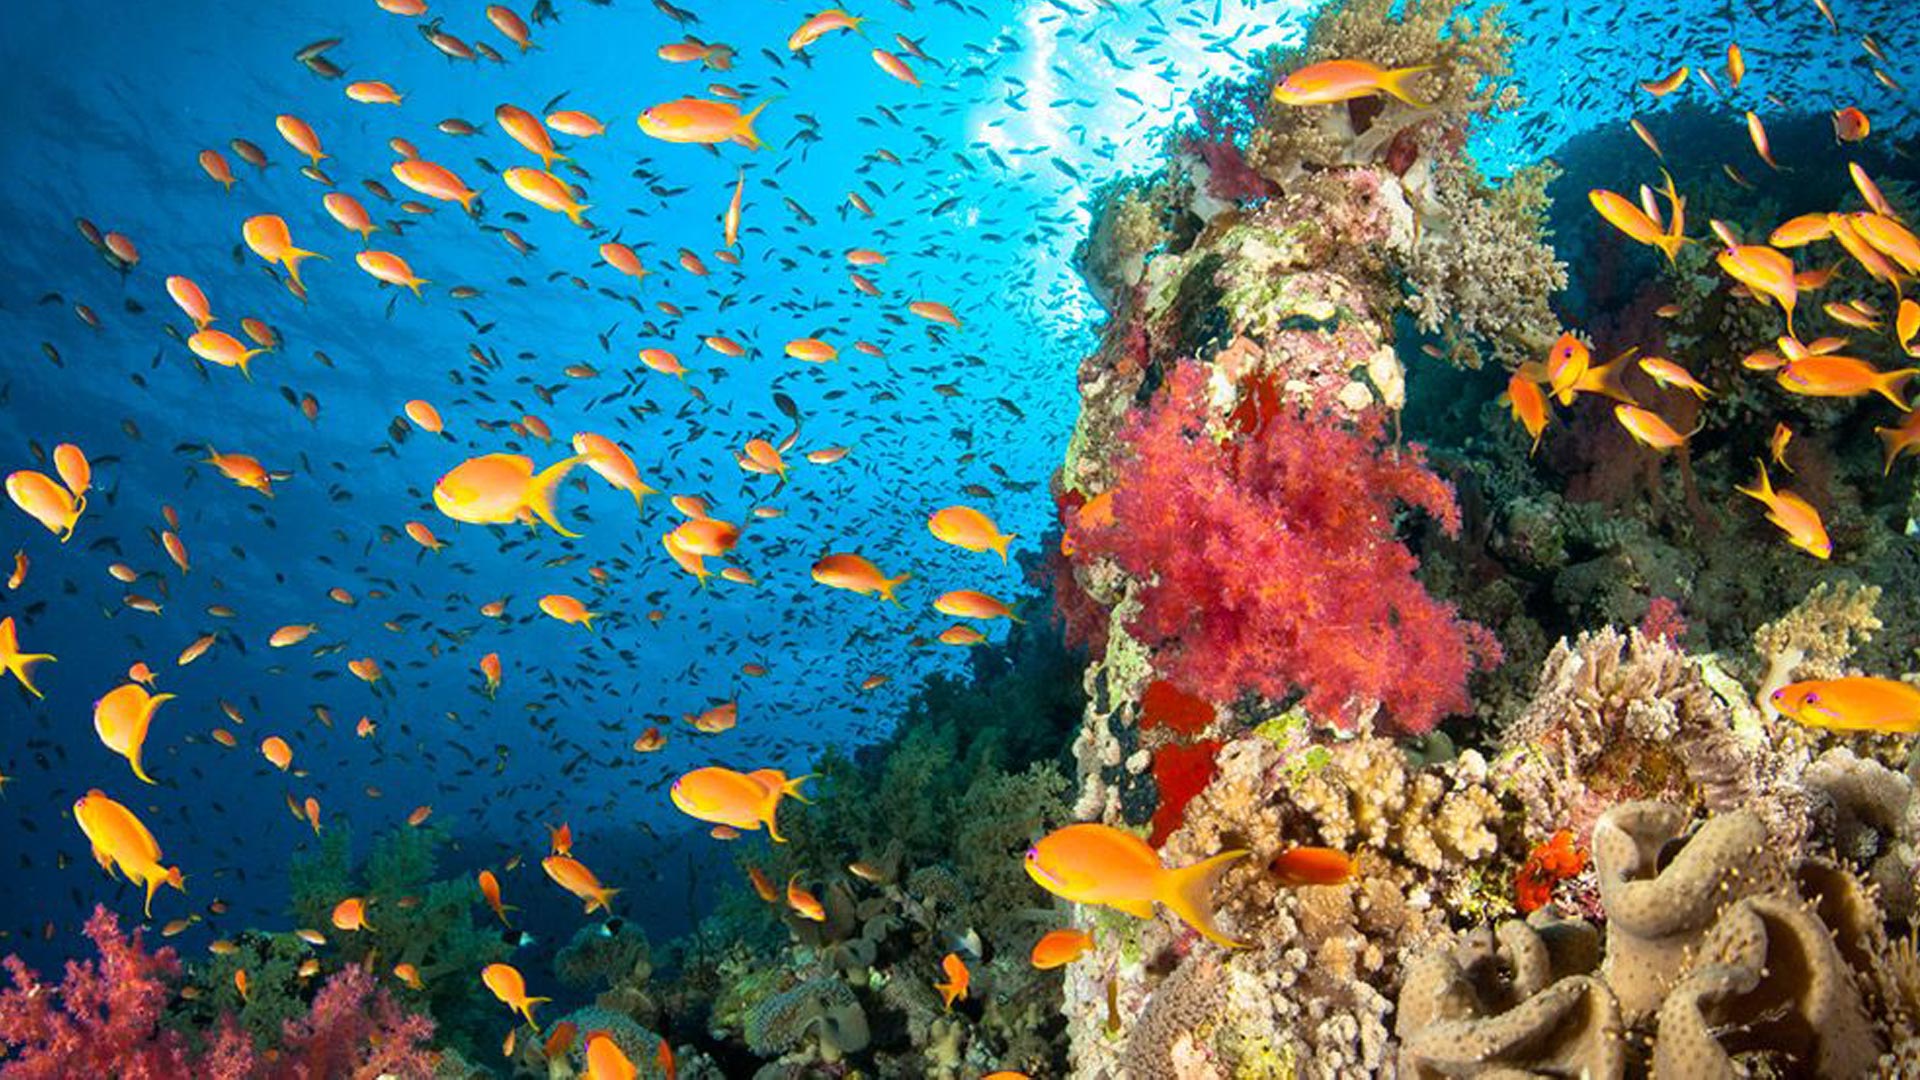 Protegint els ecosistemes marins vulnerables i els hàbitats d’especial interès pesquer a la Mediterrània